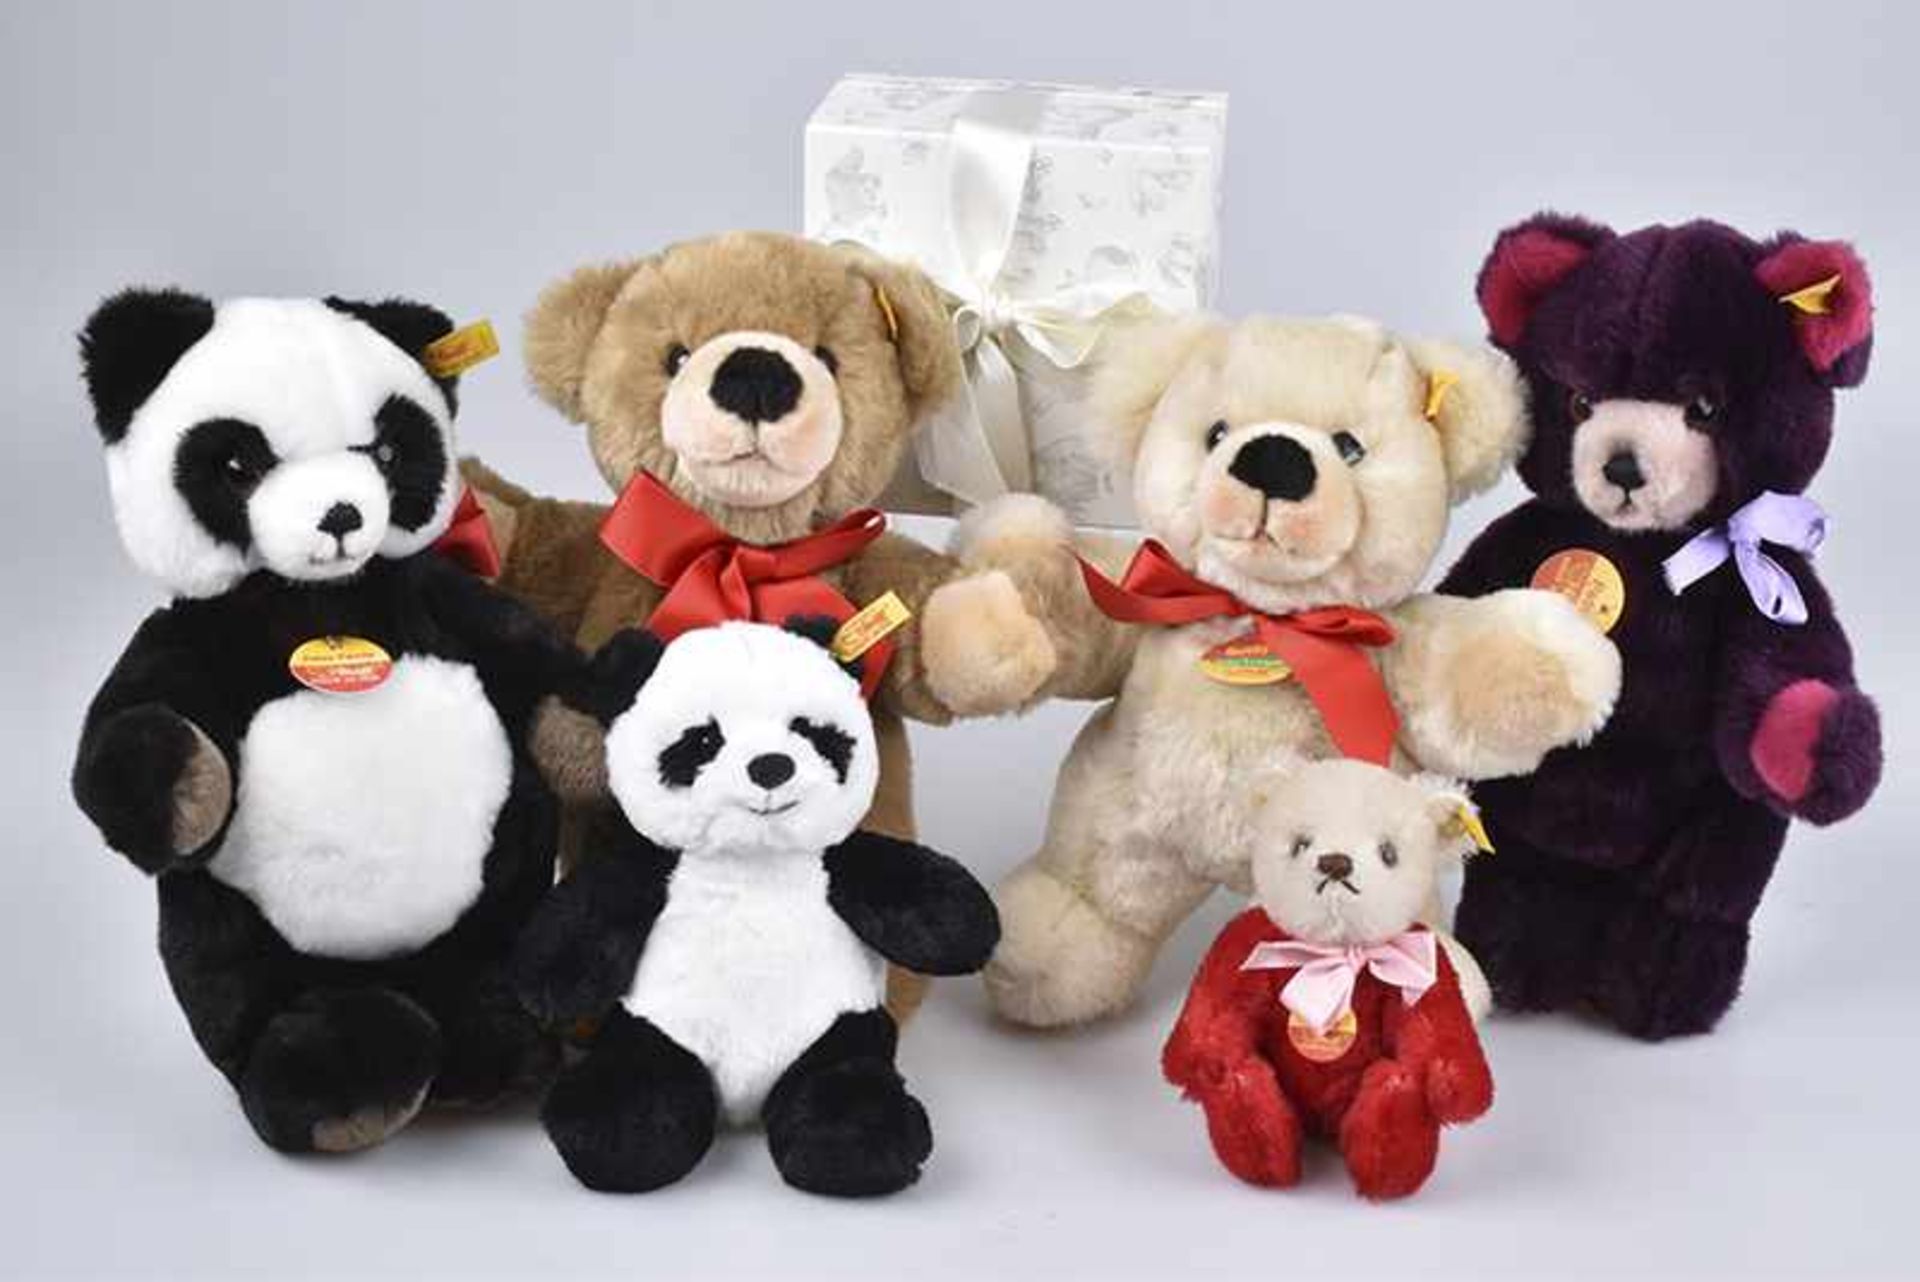 STEIFF 6 Teddys, 16-28 cm, Panda, KF, Nr. 075766, 5x KFS, Petsy, Nr. 0236/28, Petsy Panda, Nr.